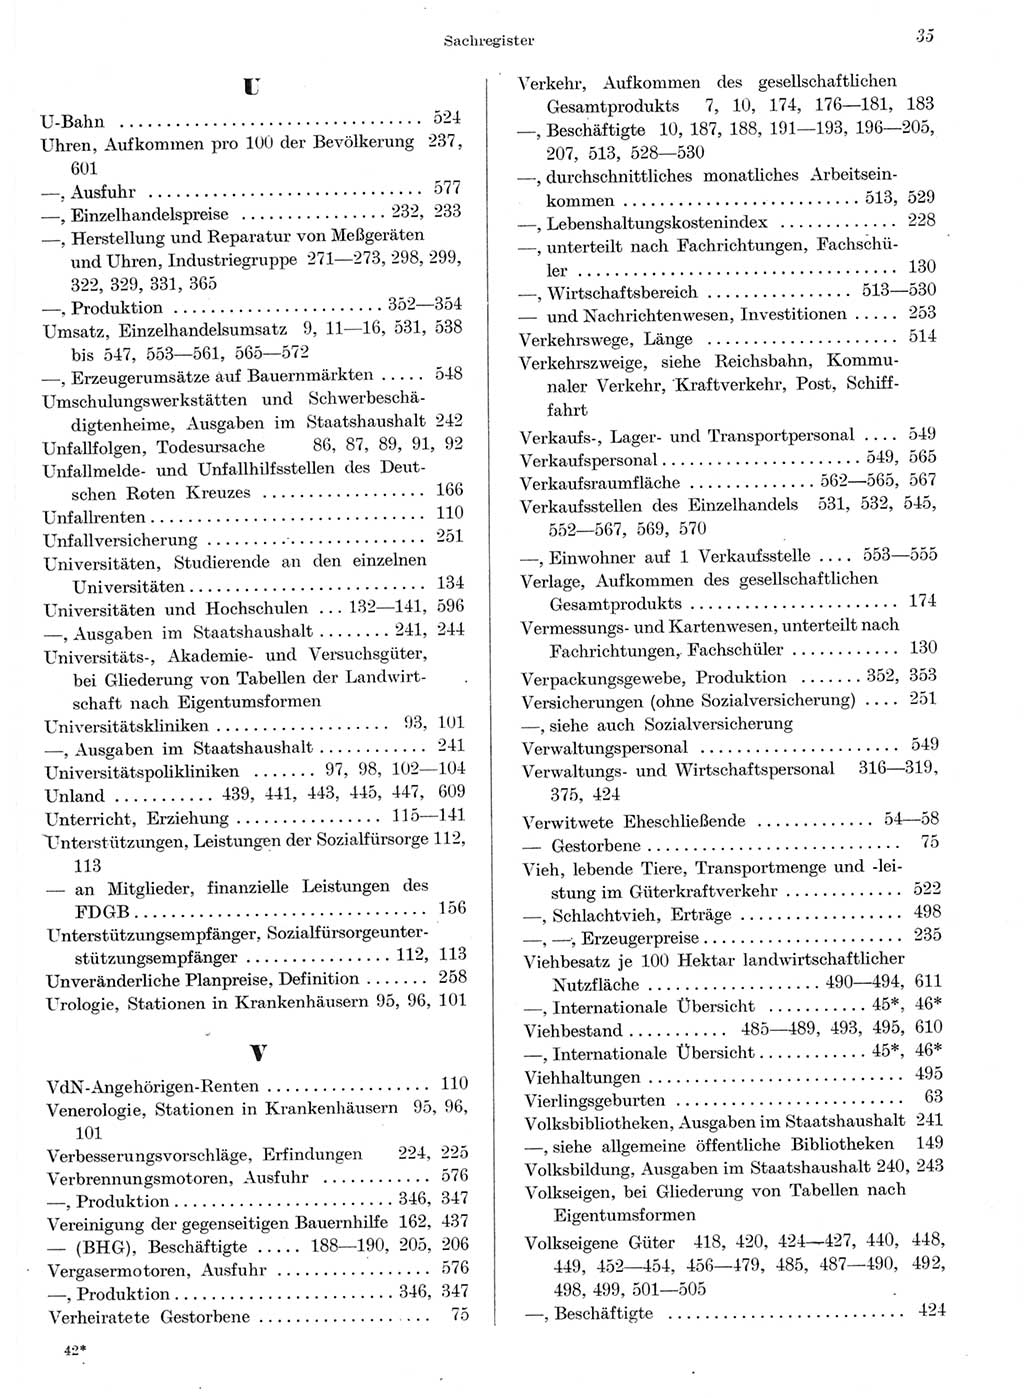 Statistisches Jahrbuch der Deutschen Demokratischen Republik (DDR) 1959, Seite 35 (Stat. Jb. DDR 1959, S. 35)